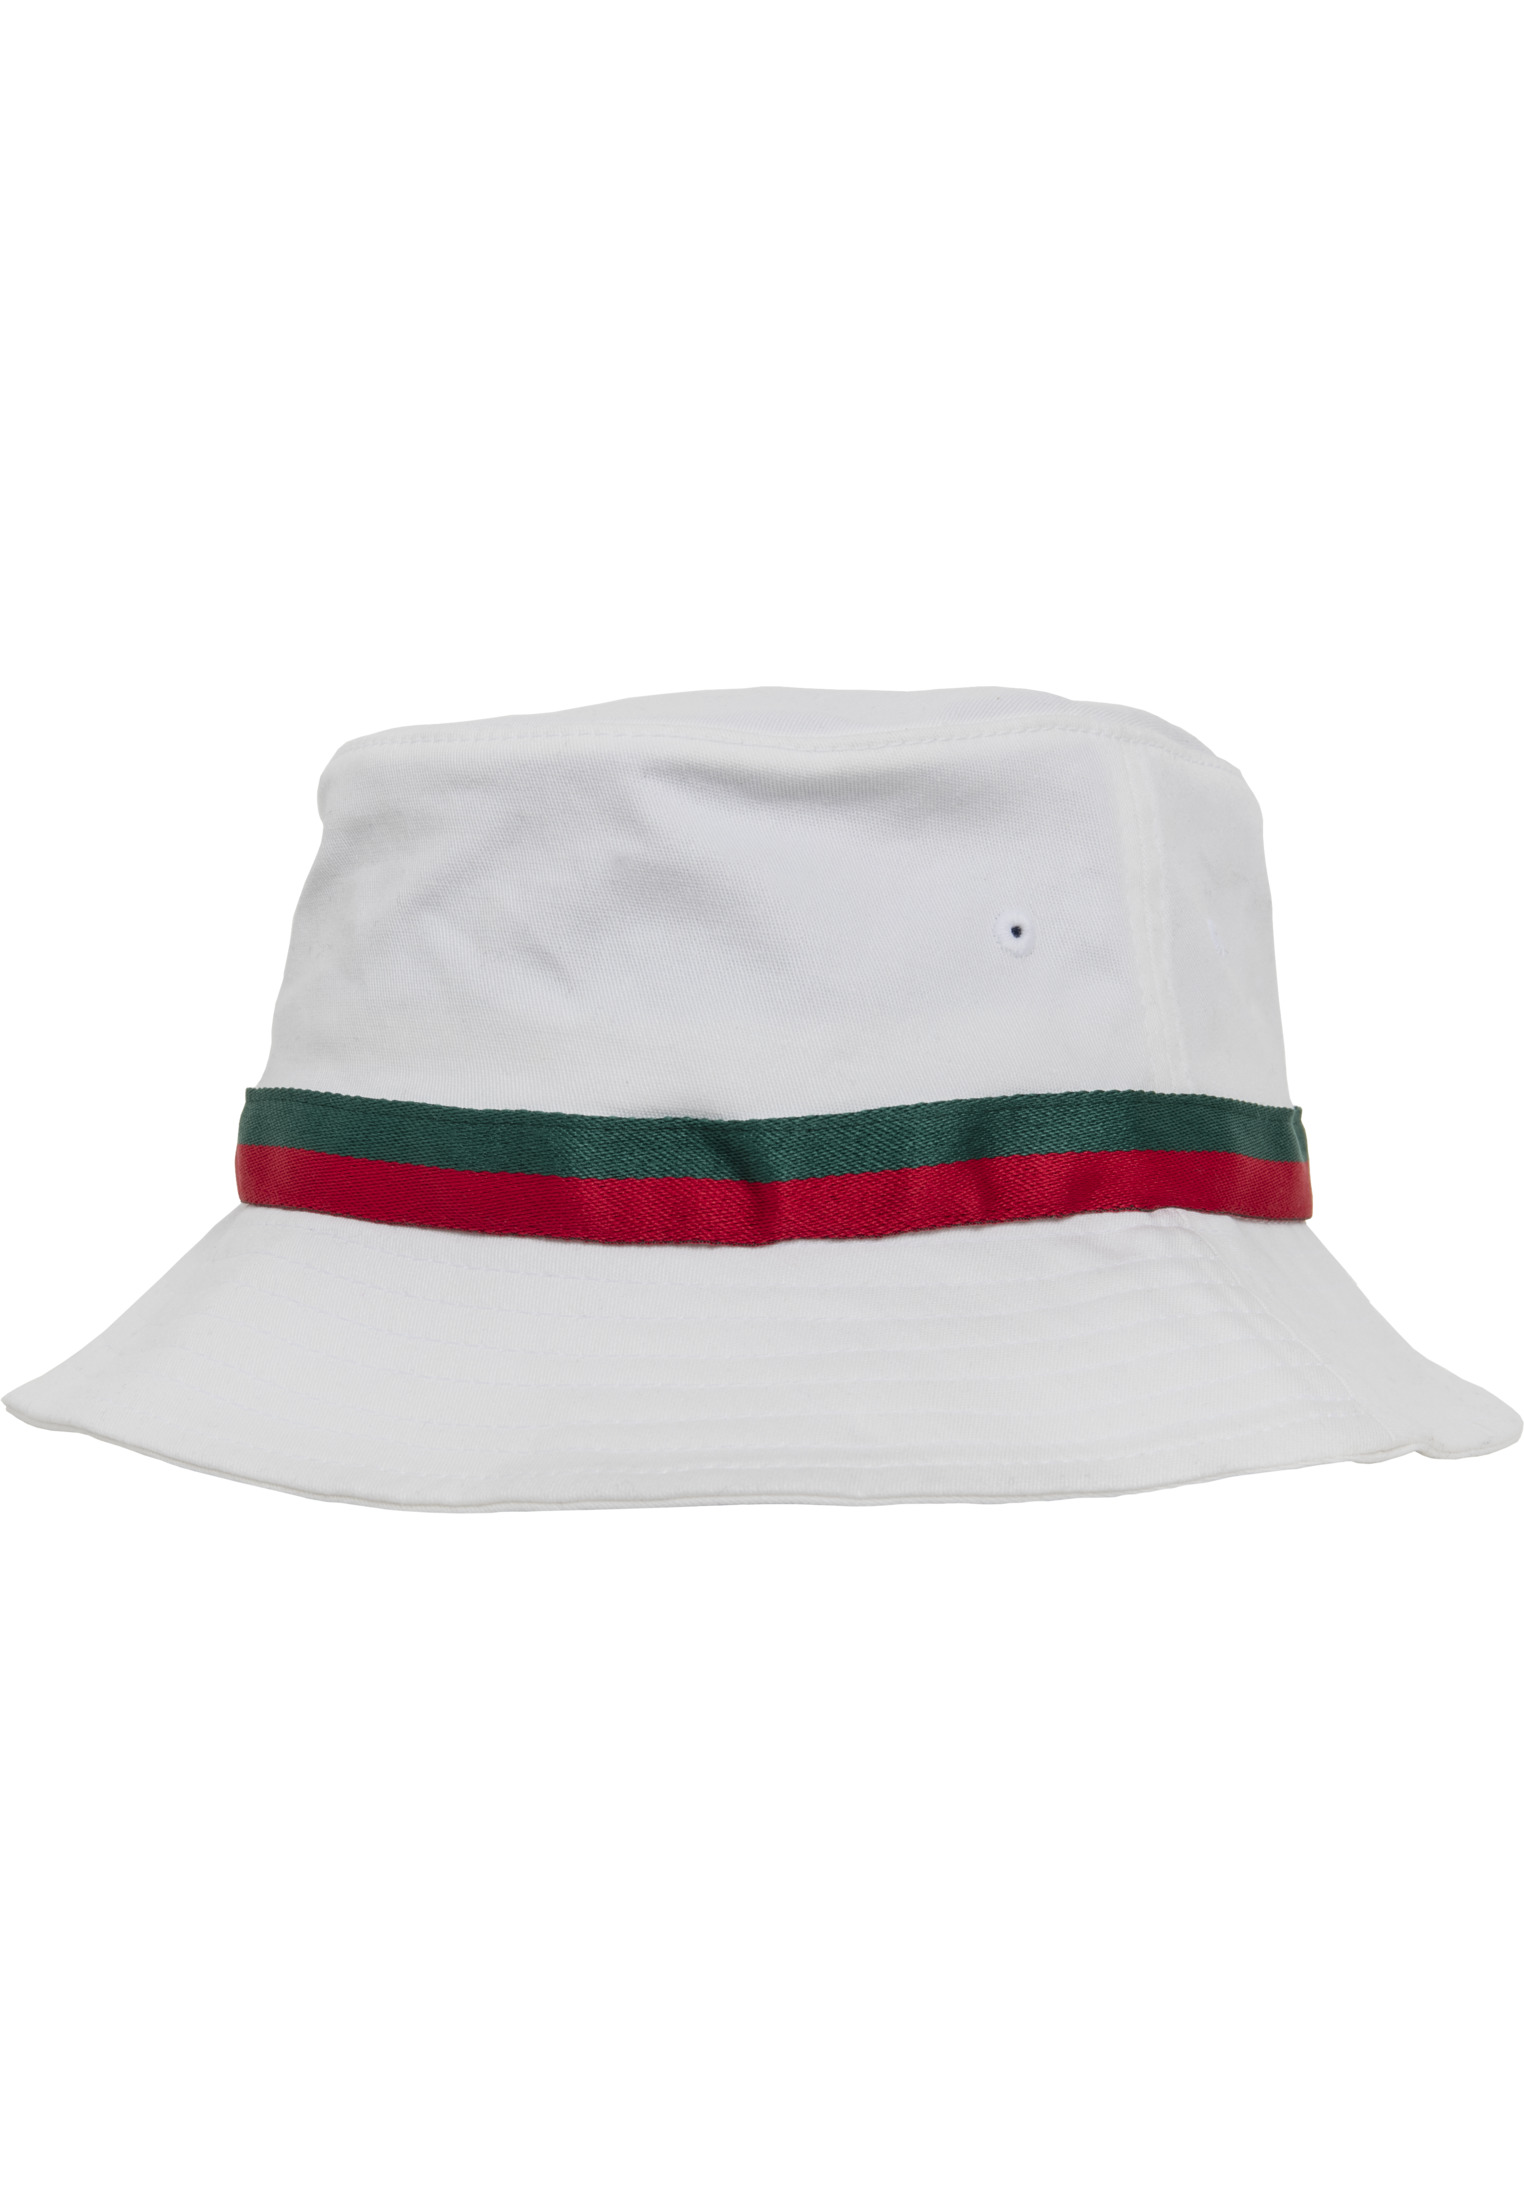 Flex fit Yupoong Stripe Bucket Hat Unisex Men and Women Fishing Hat 